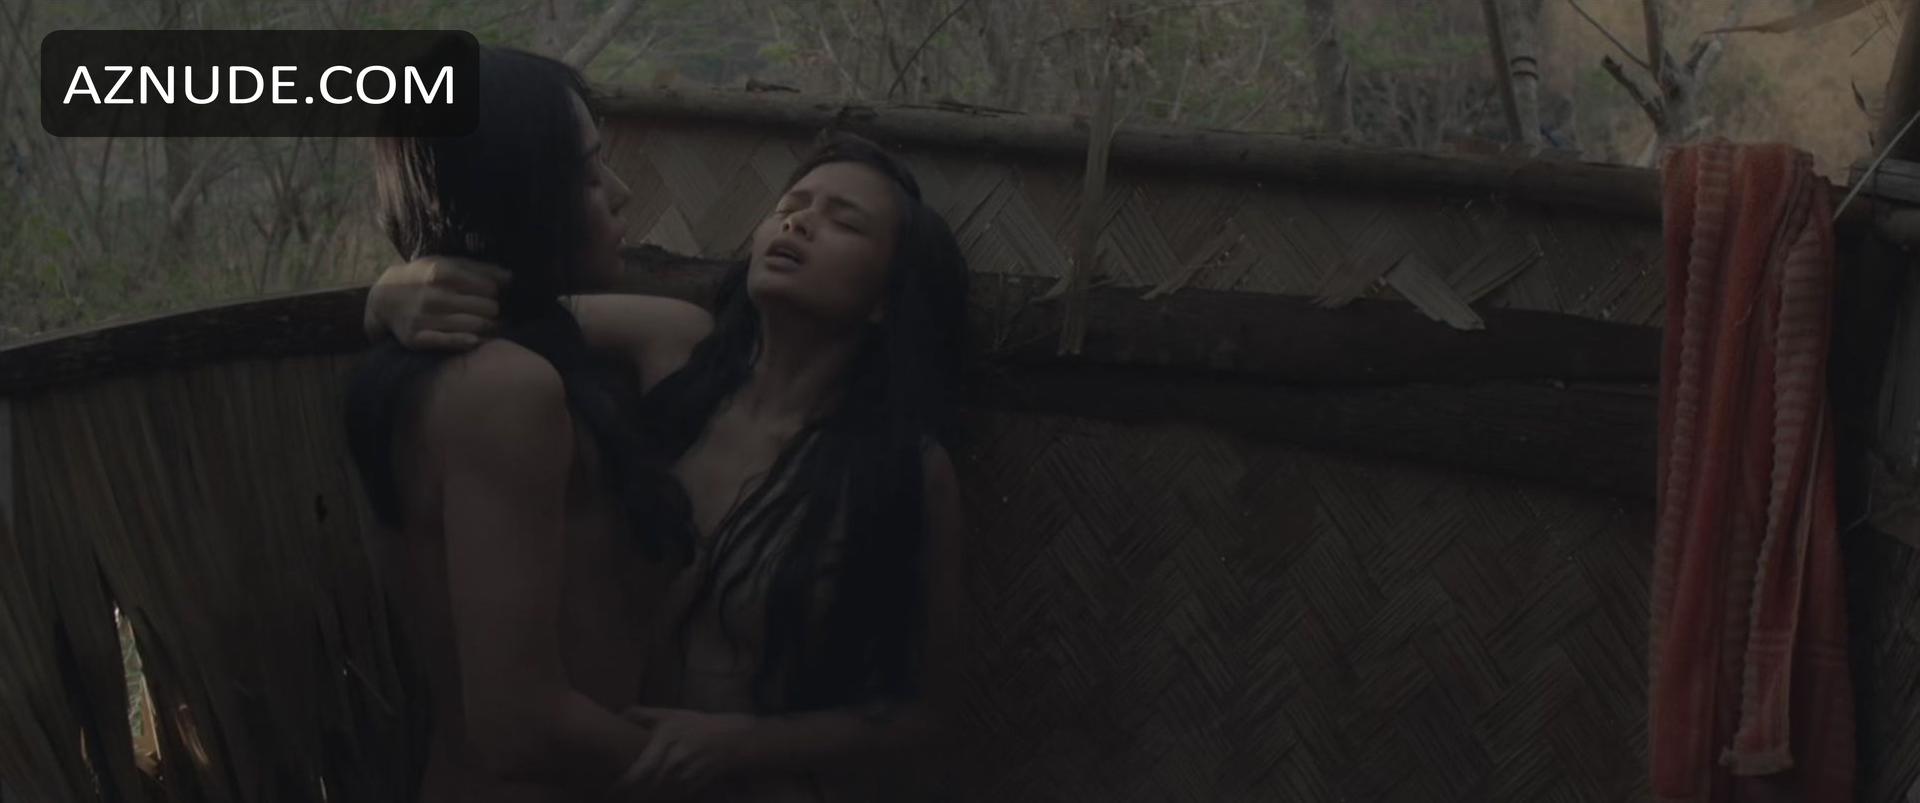 Adan filipino movie sex scene